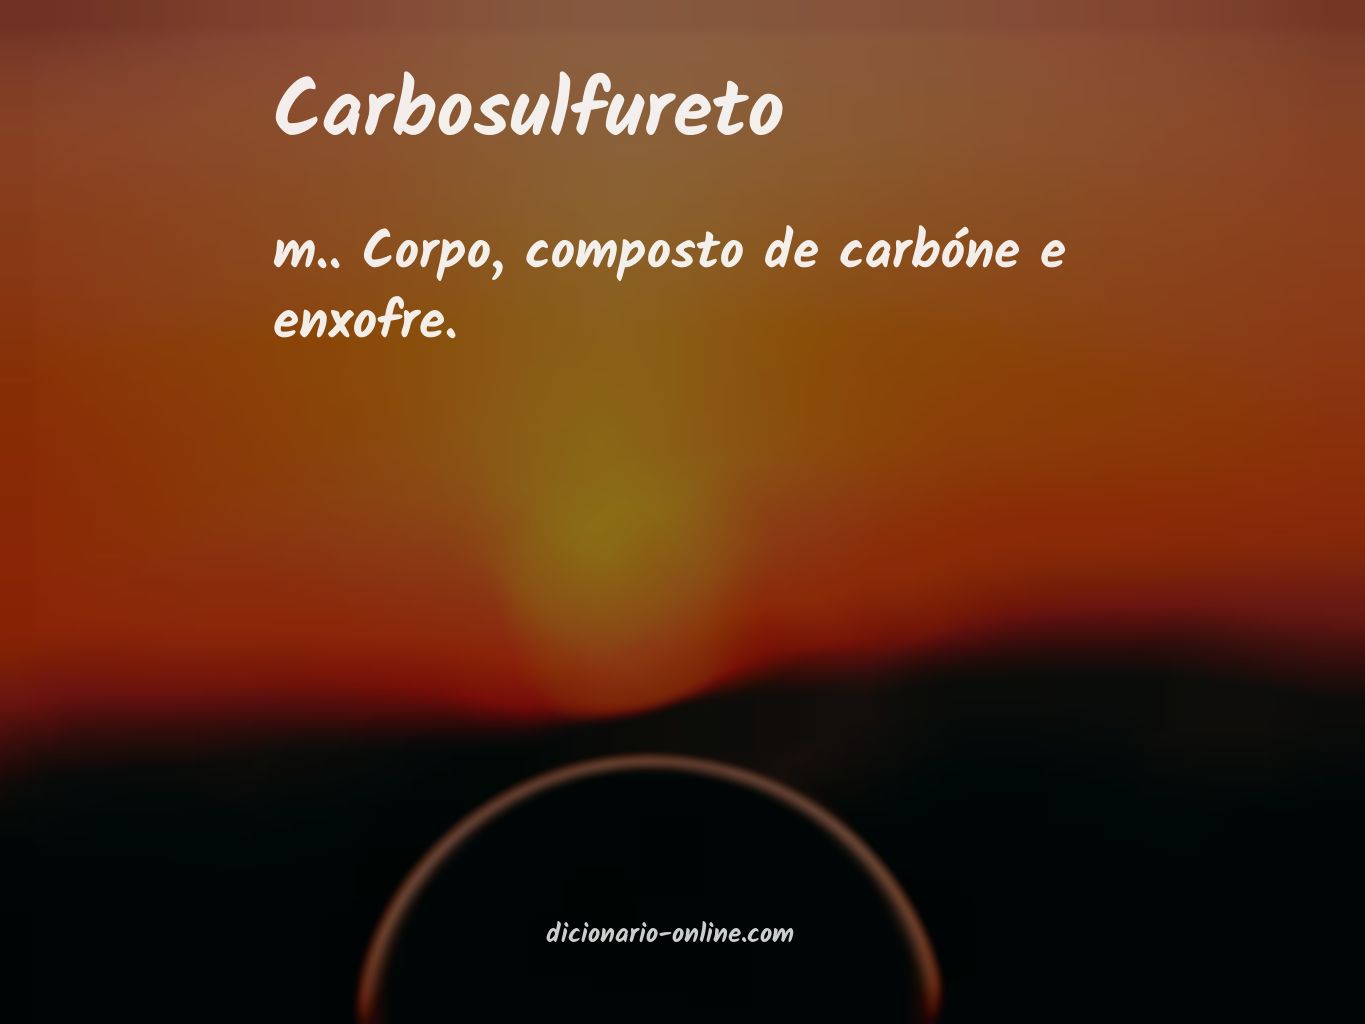 Significado de carbosulfureto